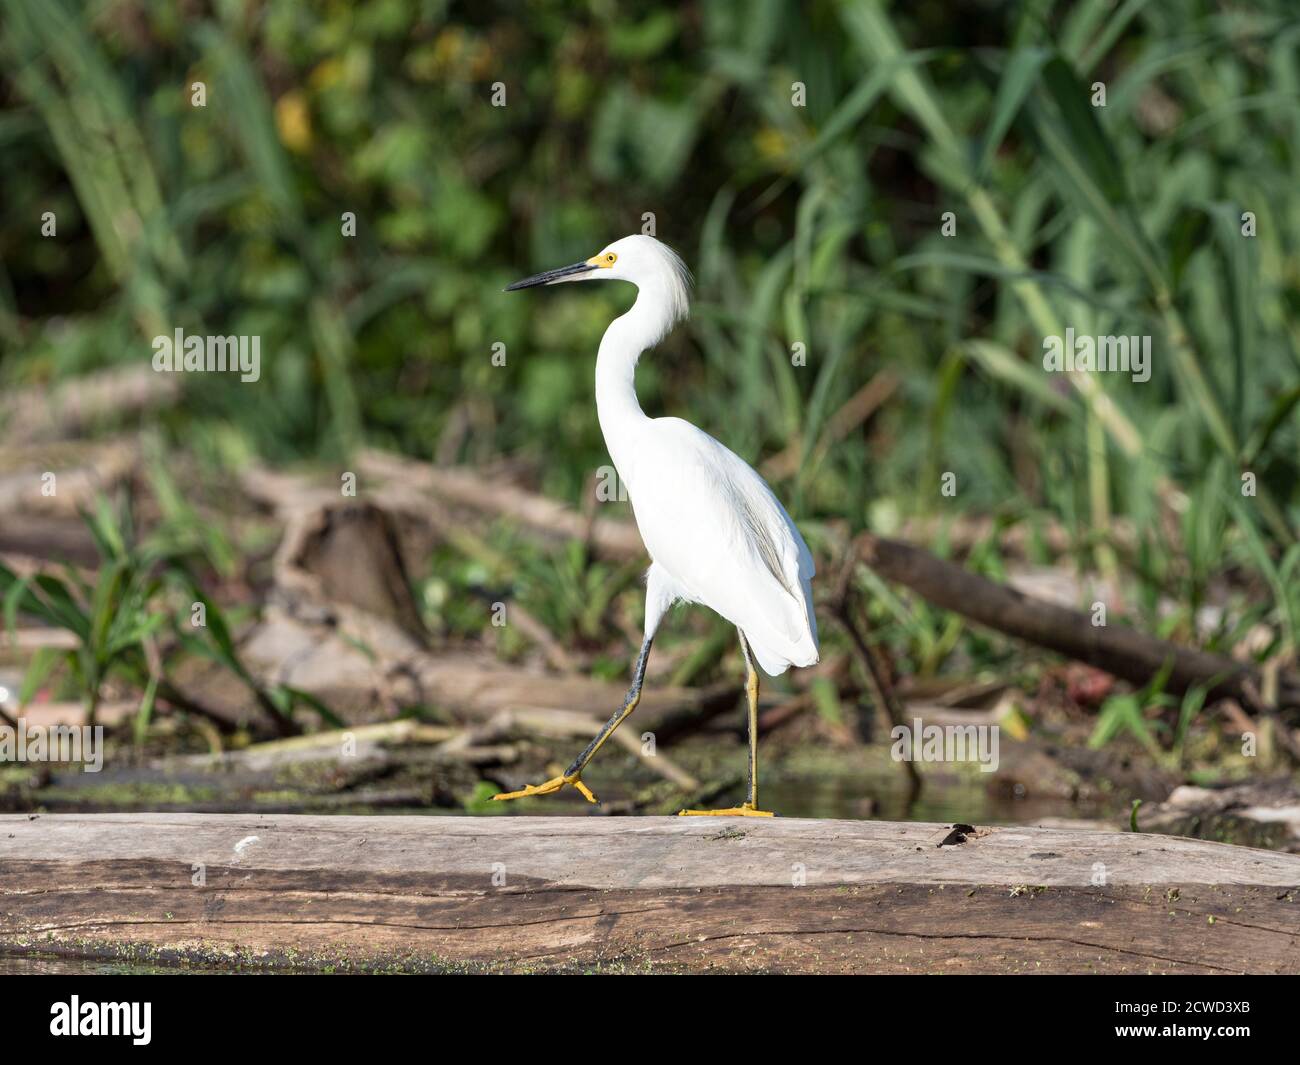 An adult snowy egret, Egretta thula, Río El Dorado, Amazon Basin, Loreto, Peru. Stock Photo